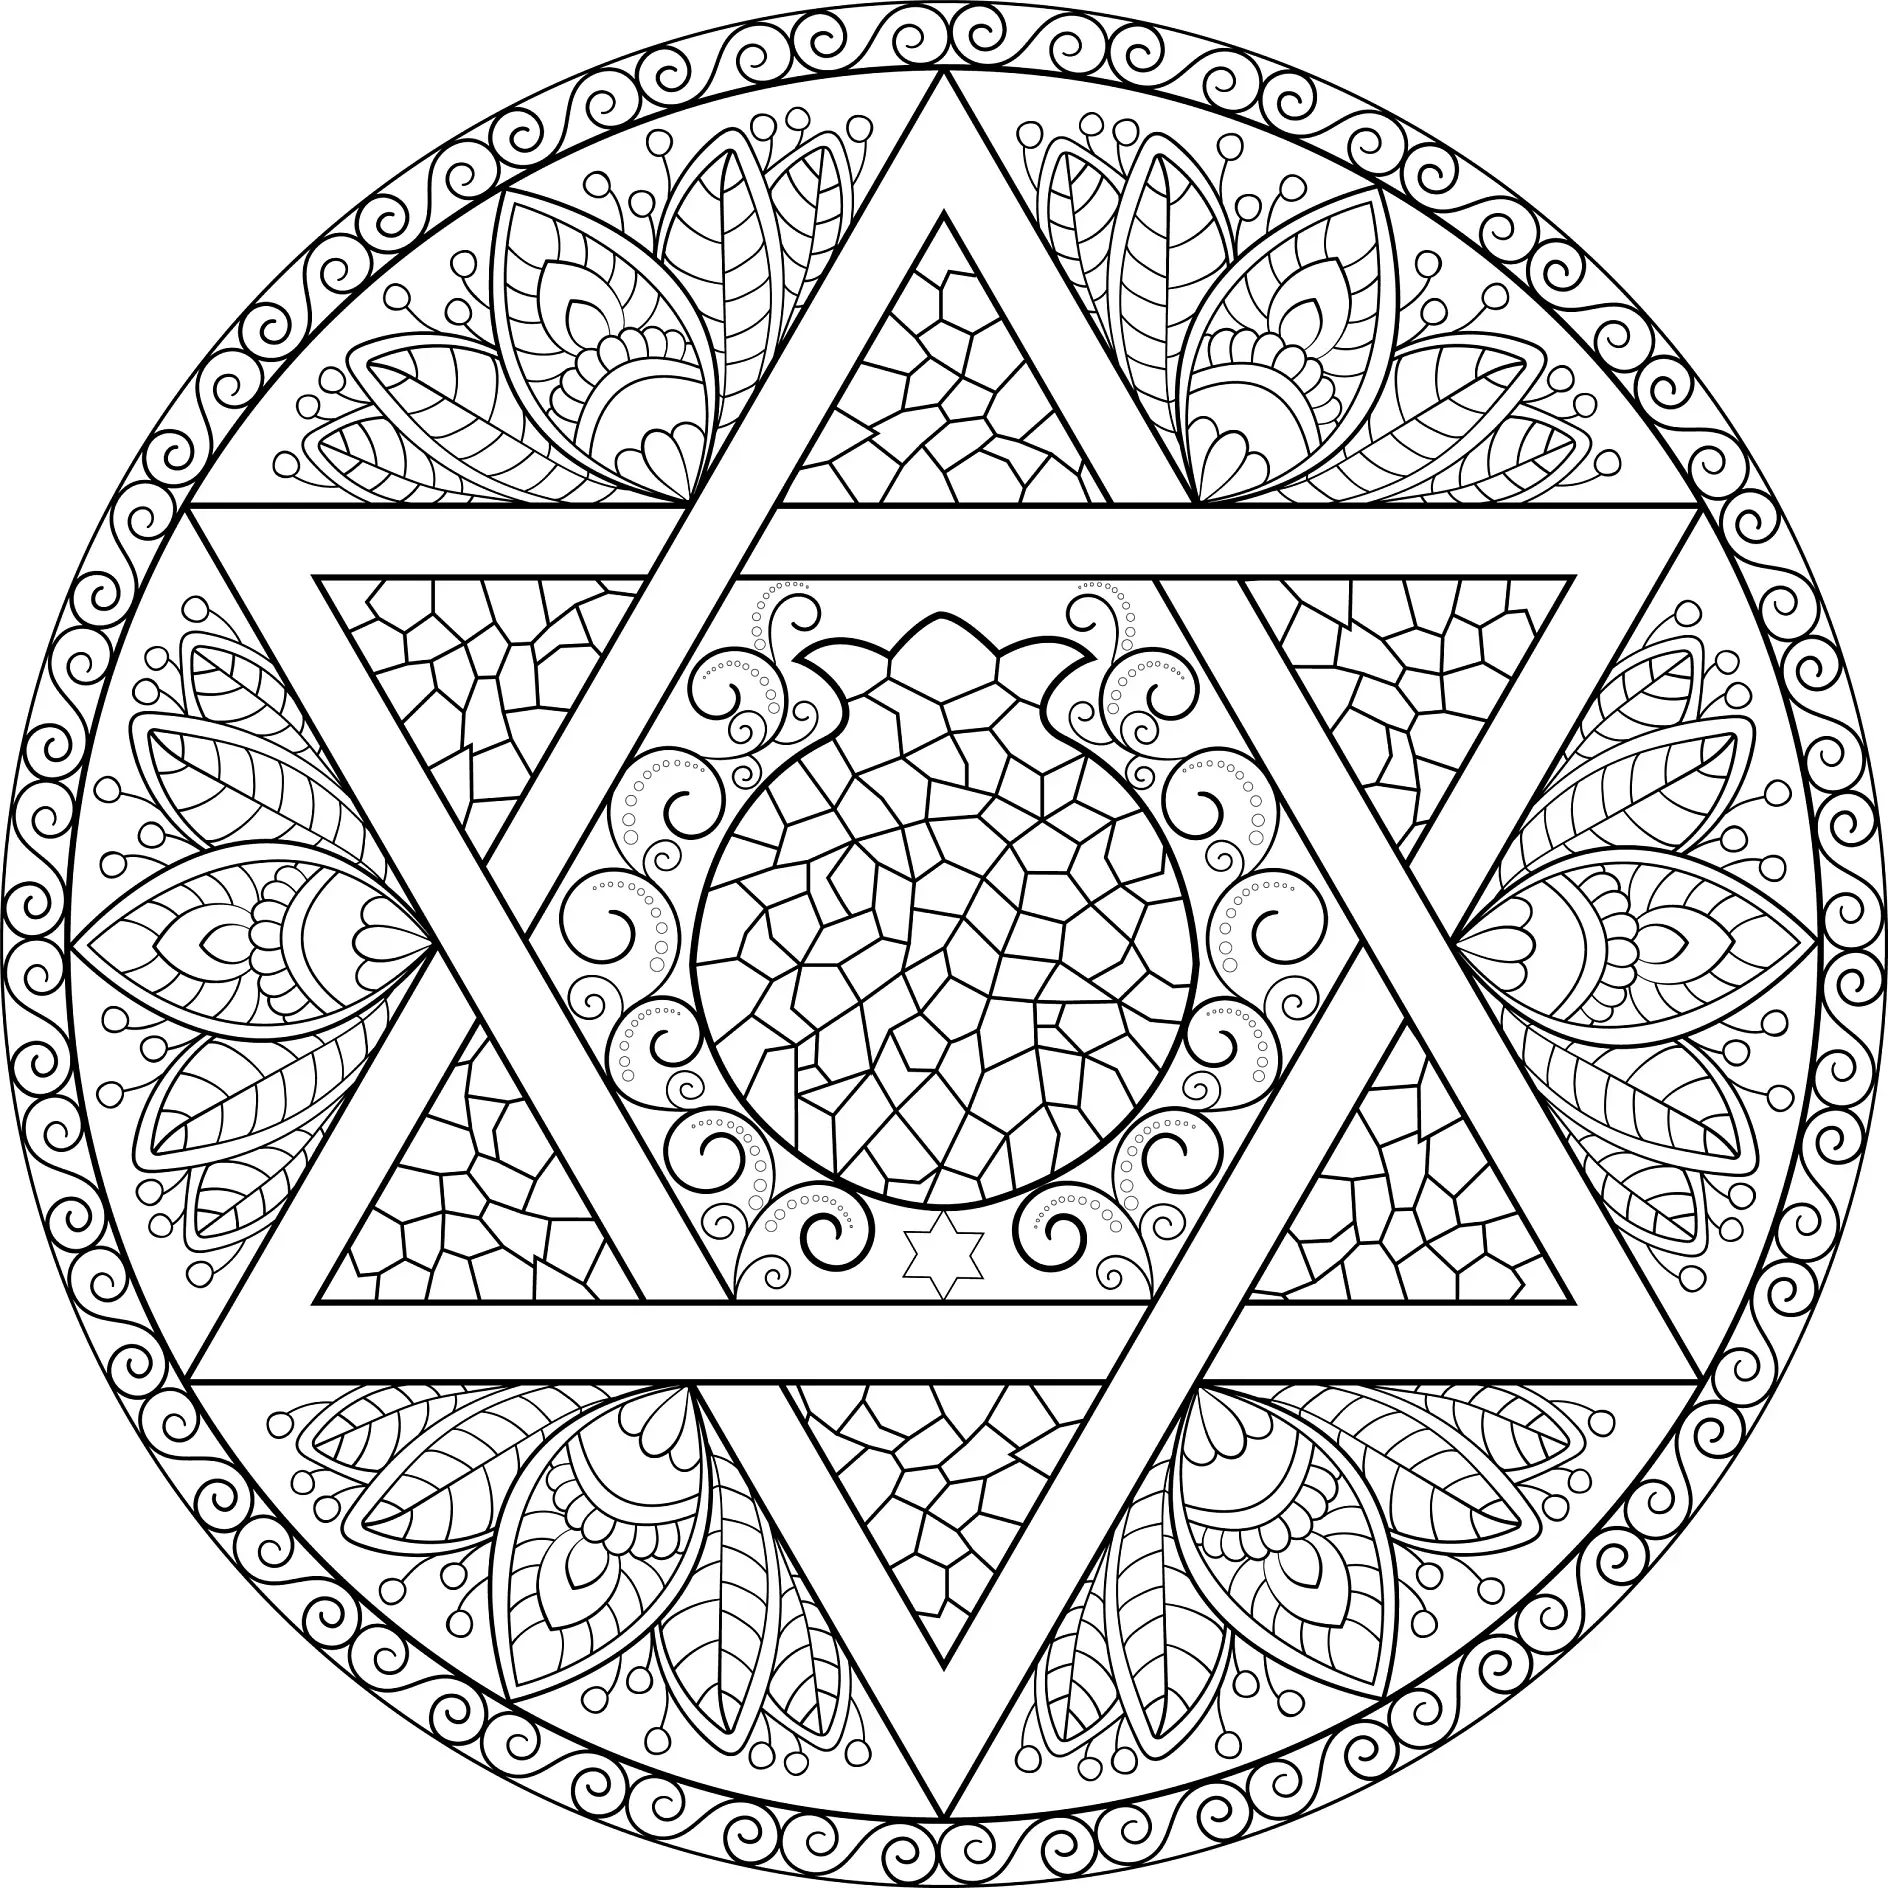 Ausmalbild Mandala mit Dreiecken und Blumenmuster